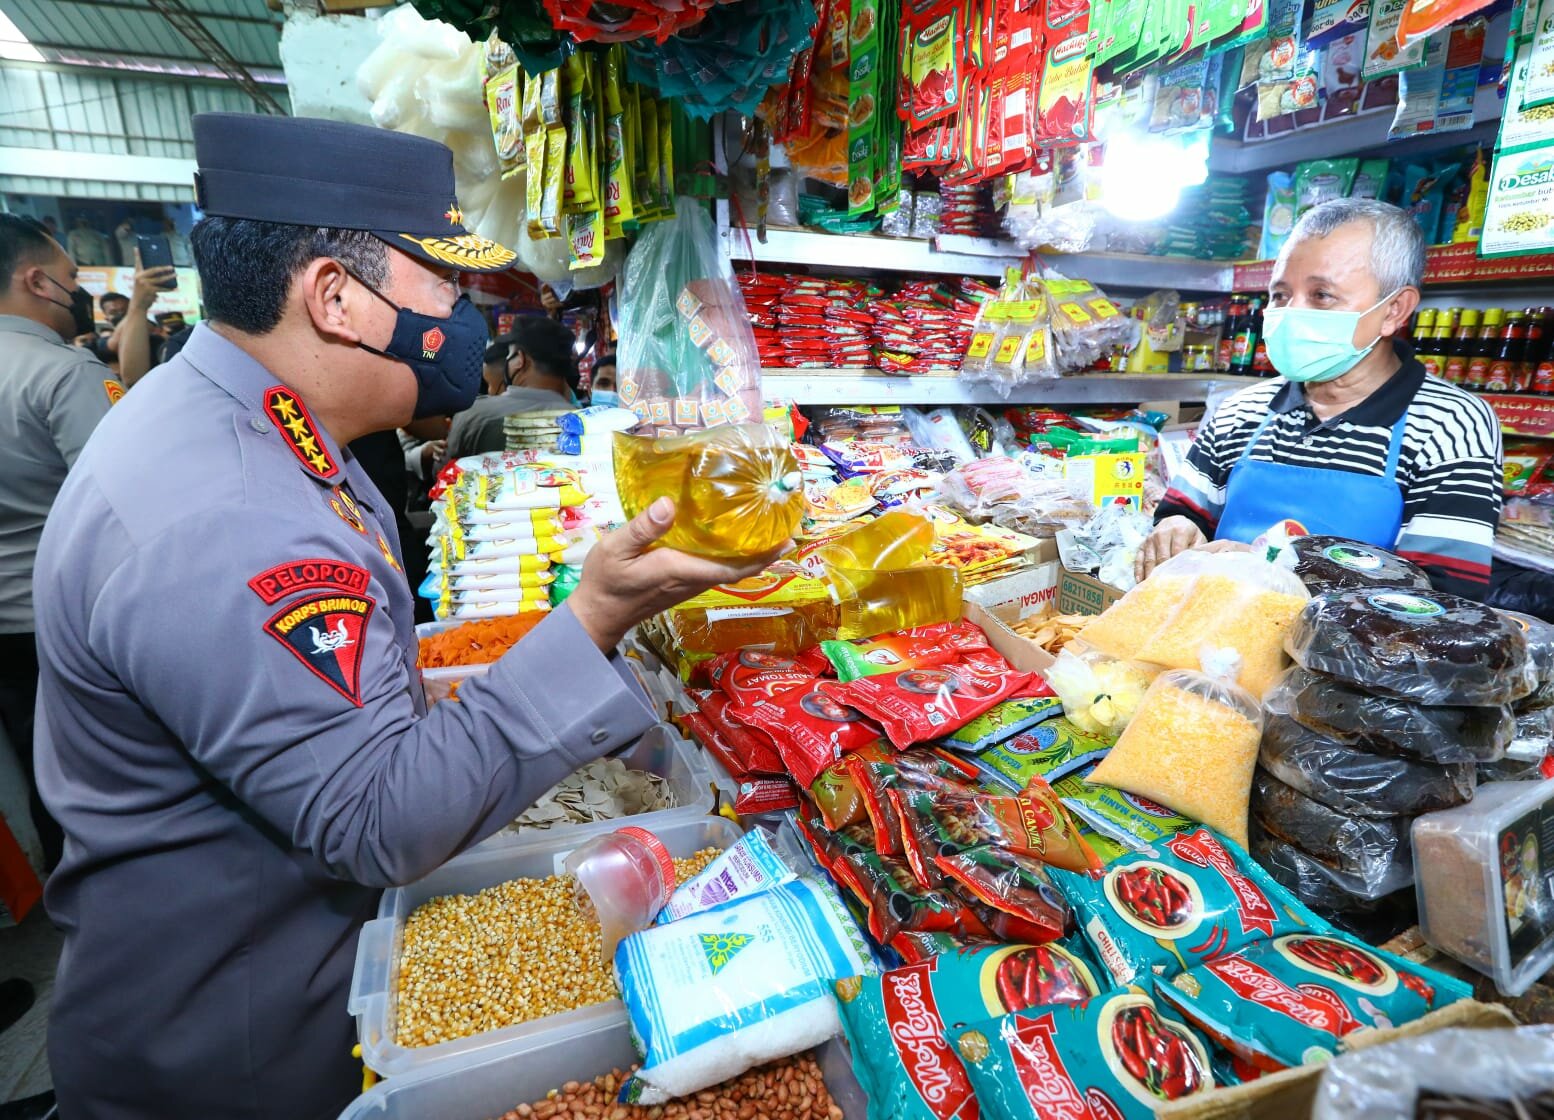 Kapolri Minta Forkopimda Kawal Proses Distribusi Minyak Curah Agar Tersedia di Pasar